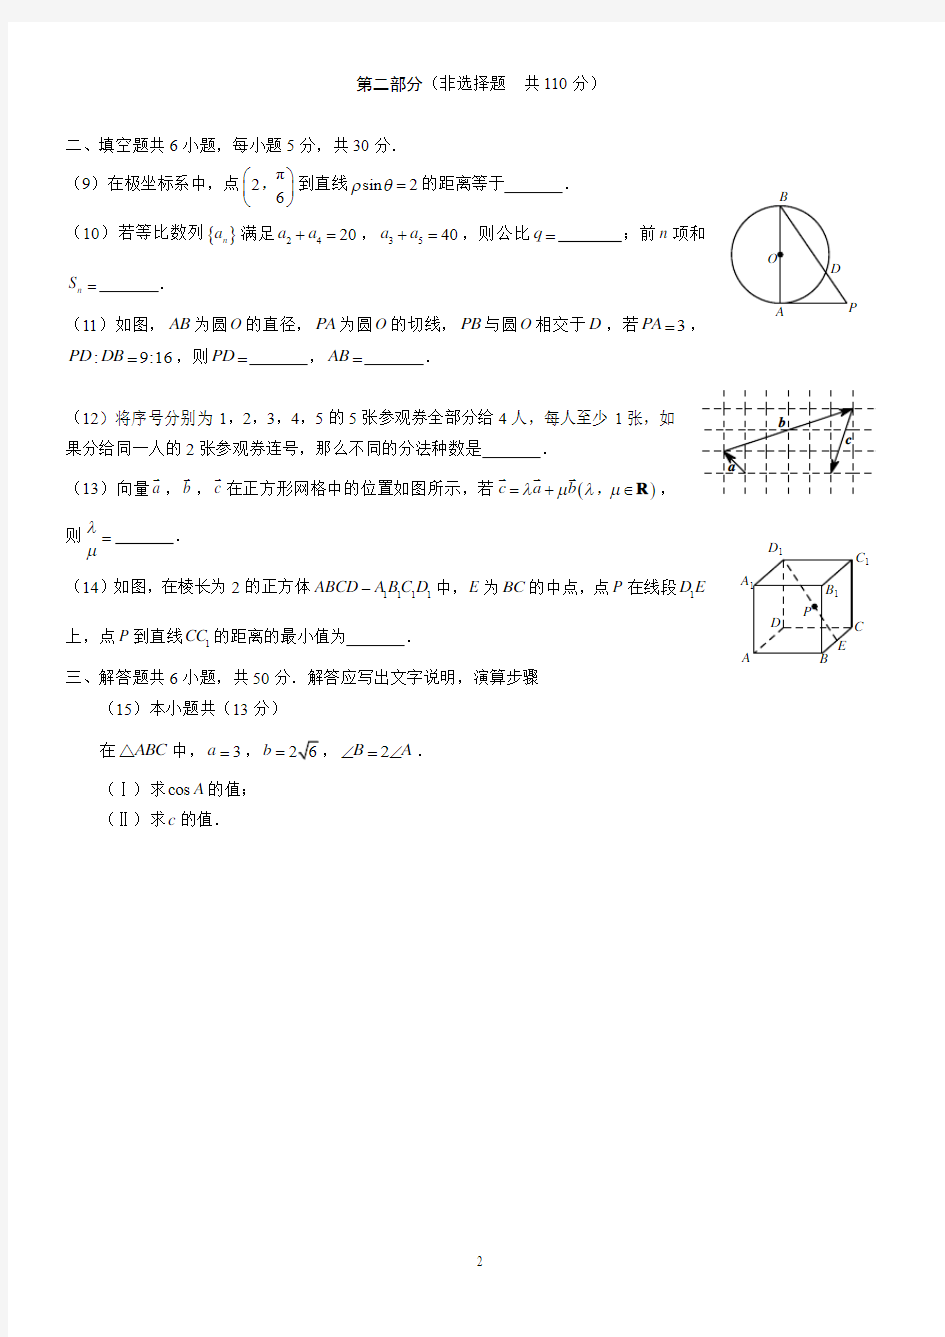 2013年北京高考数学试题及答案(教研室真题)